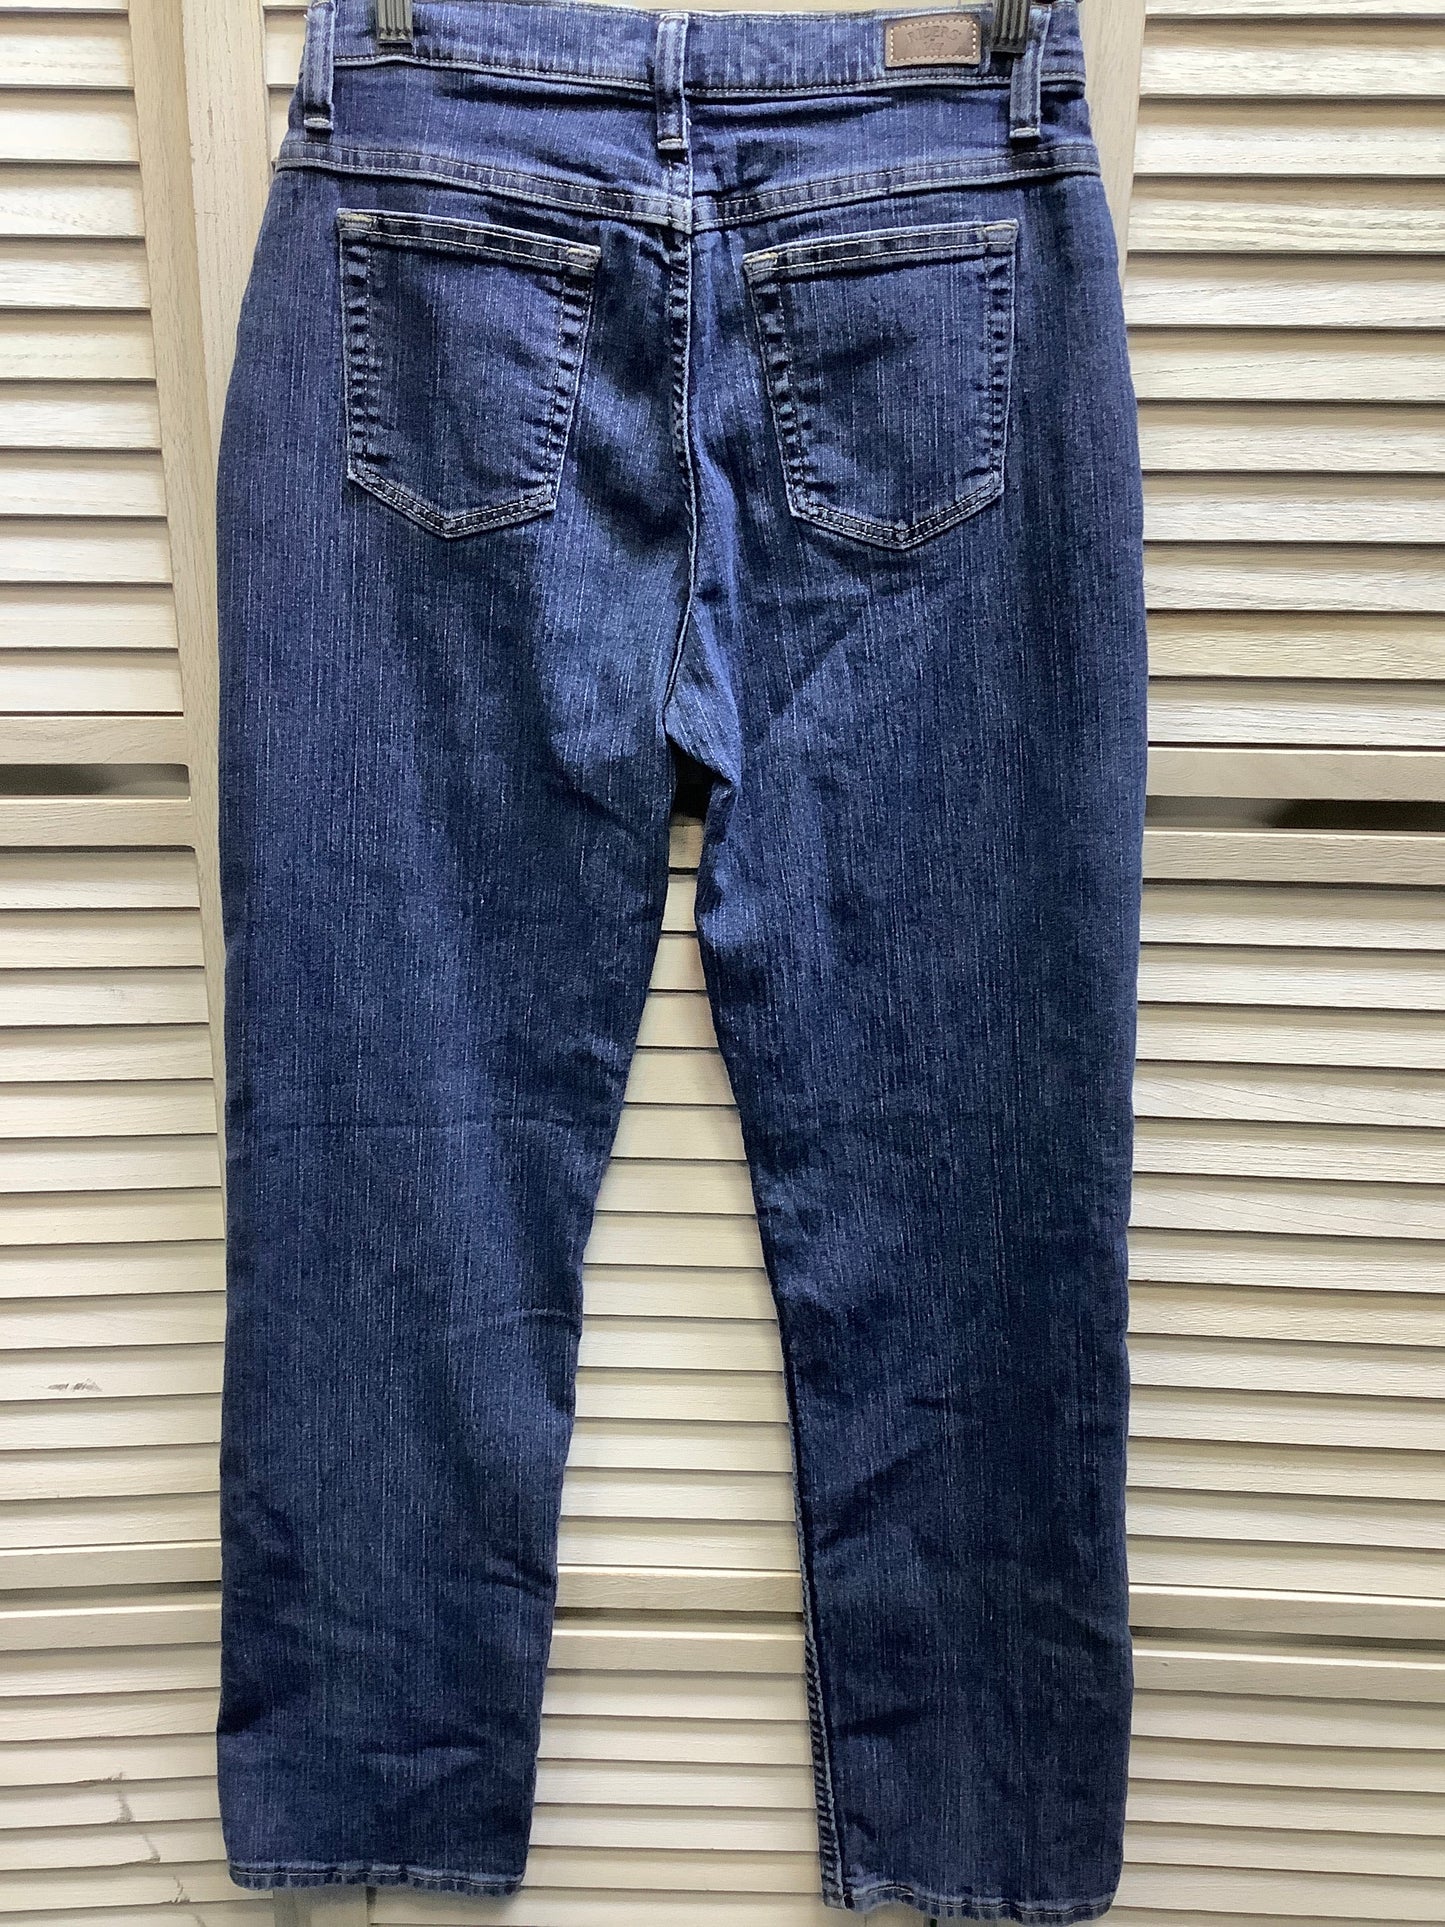 Blue Denim Jeans Boot Cut Lee, Size 8